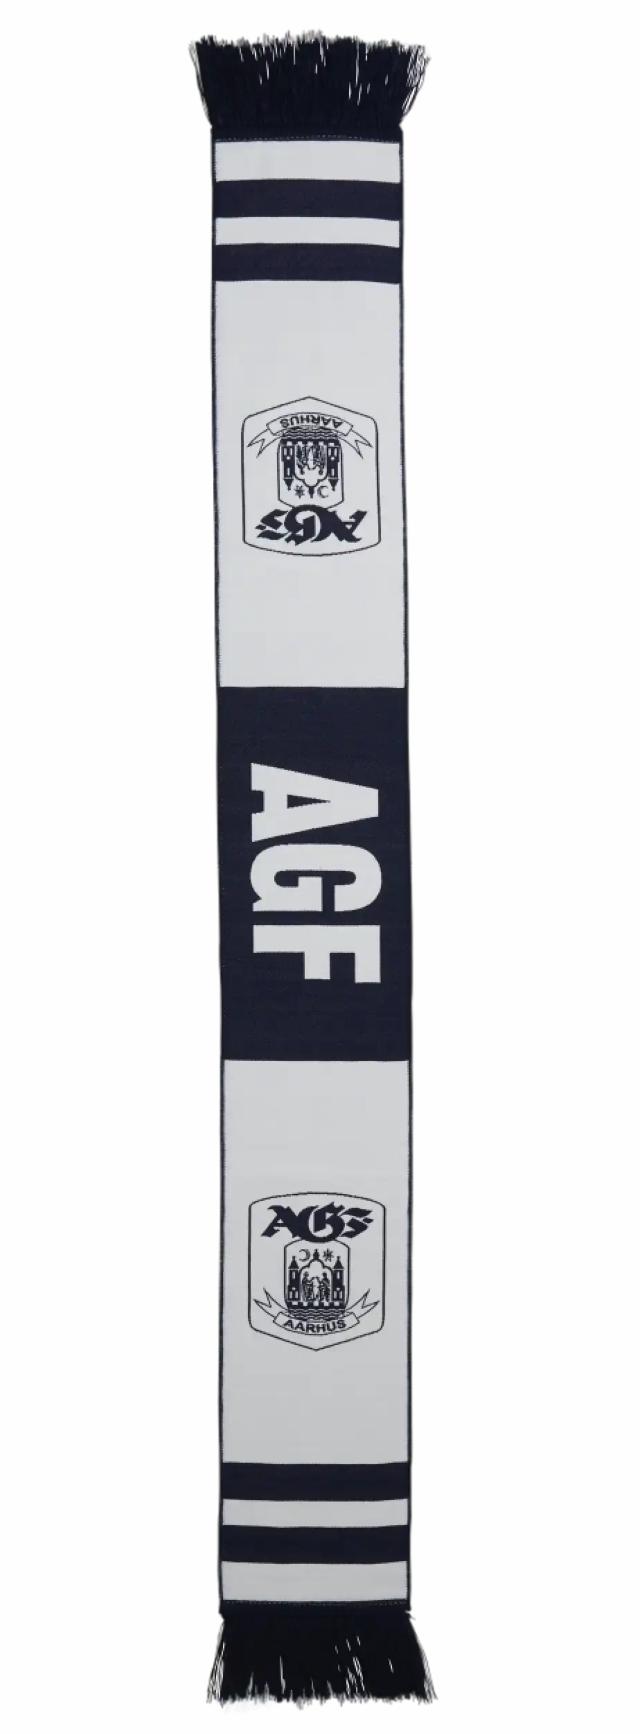 AGF Halstørklæde Hvid/Blå